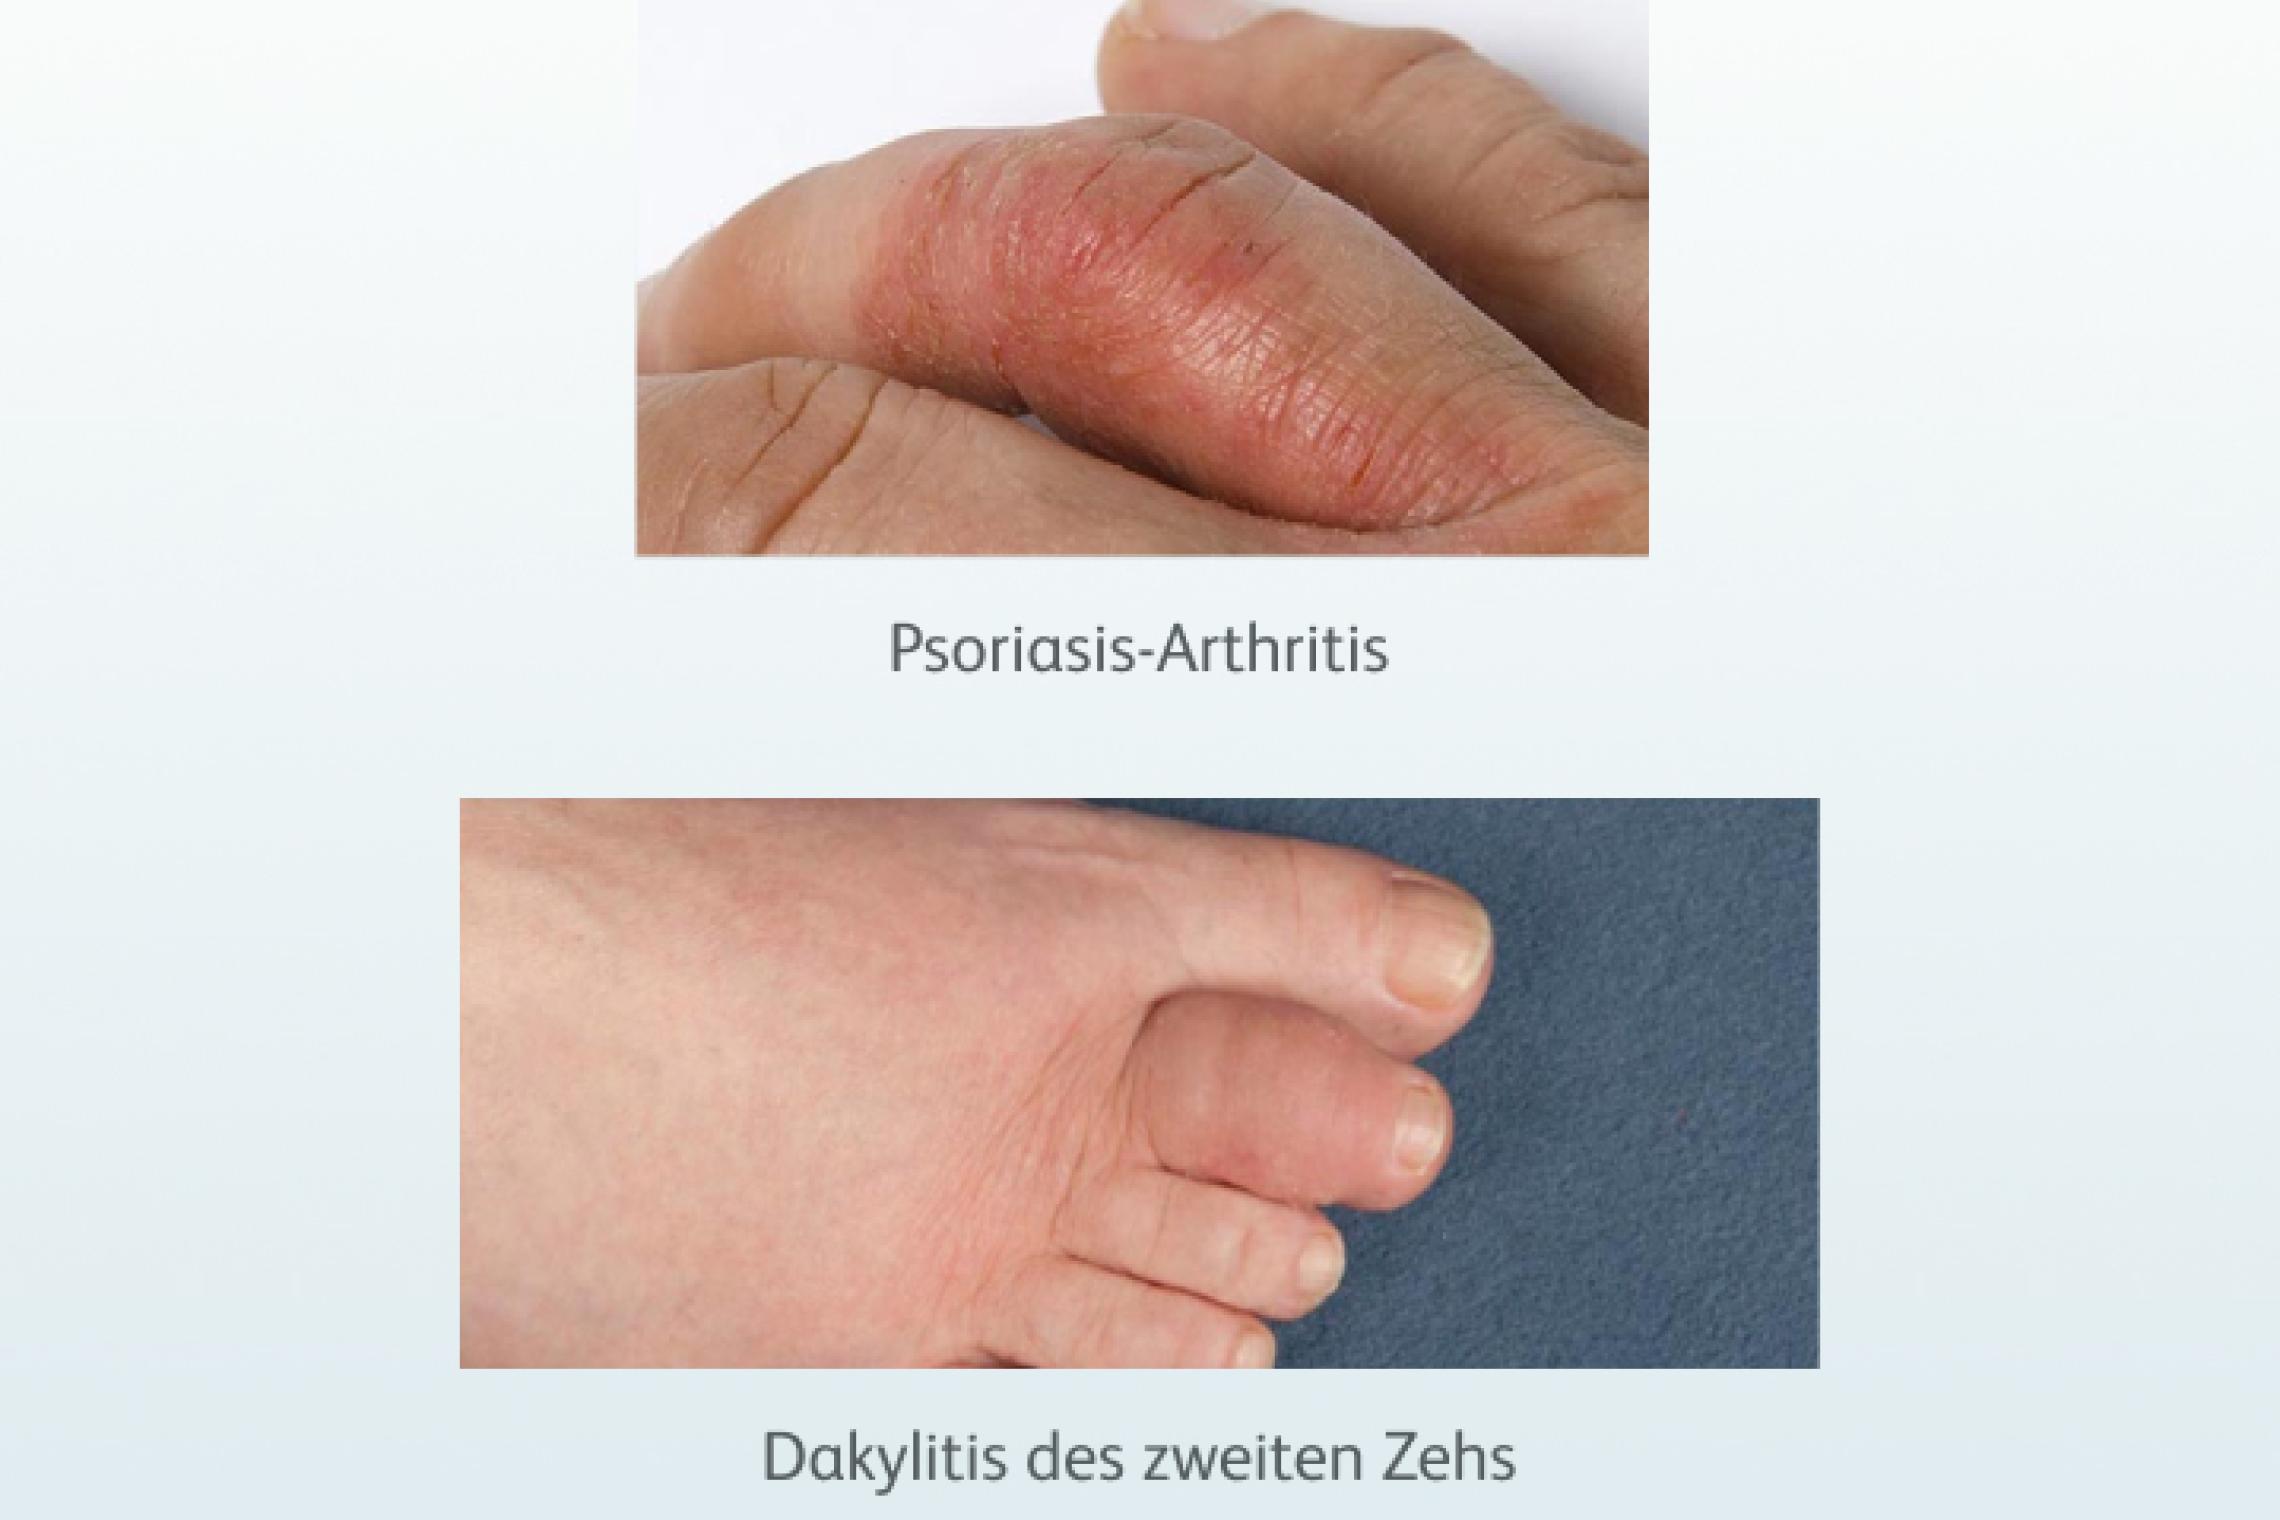 Psoriasis-Arthritis und Dakylitis des zweiten Zehns